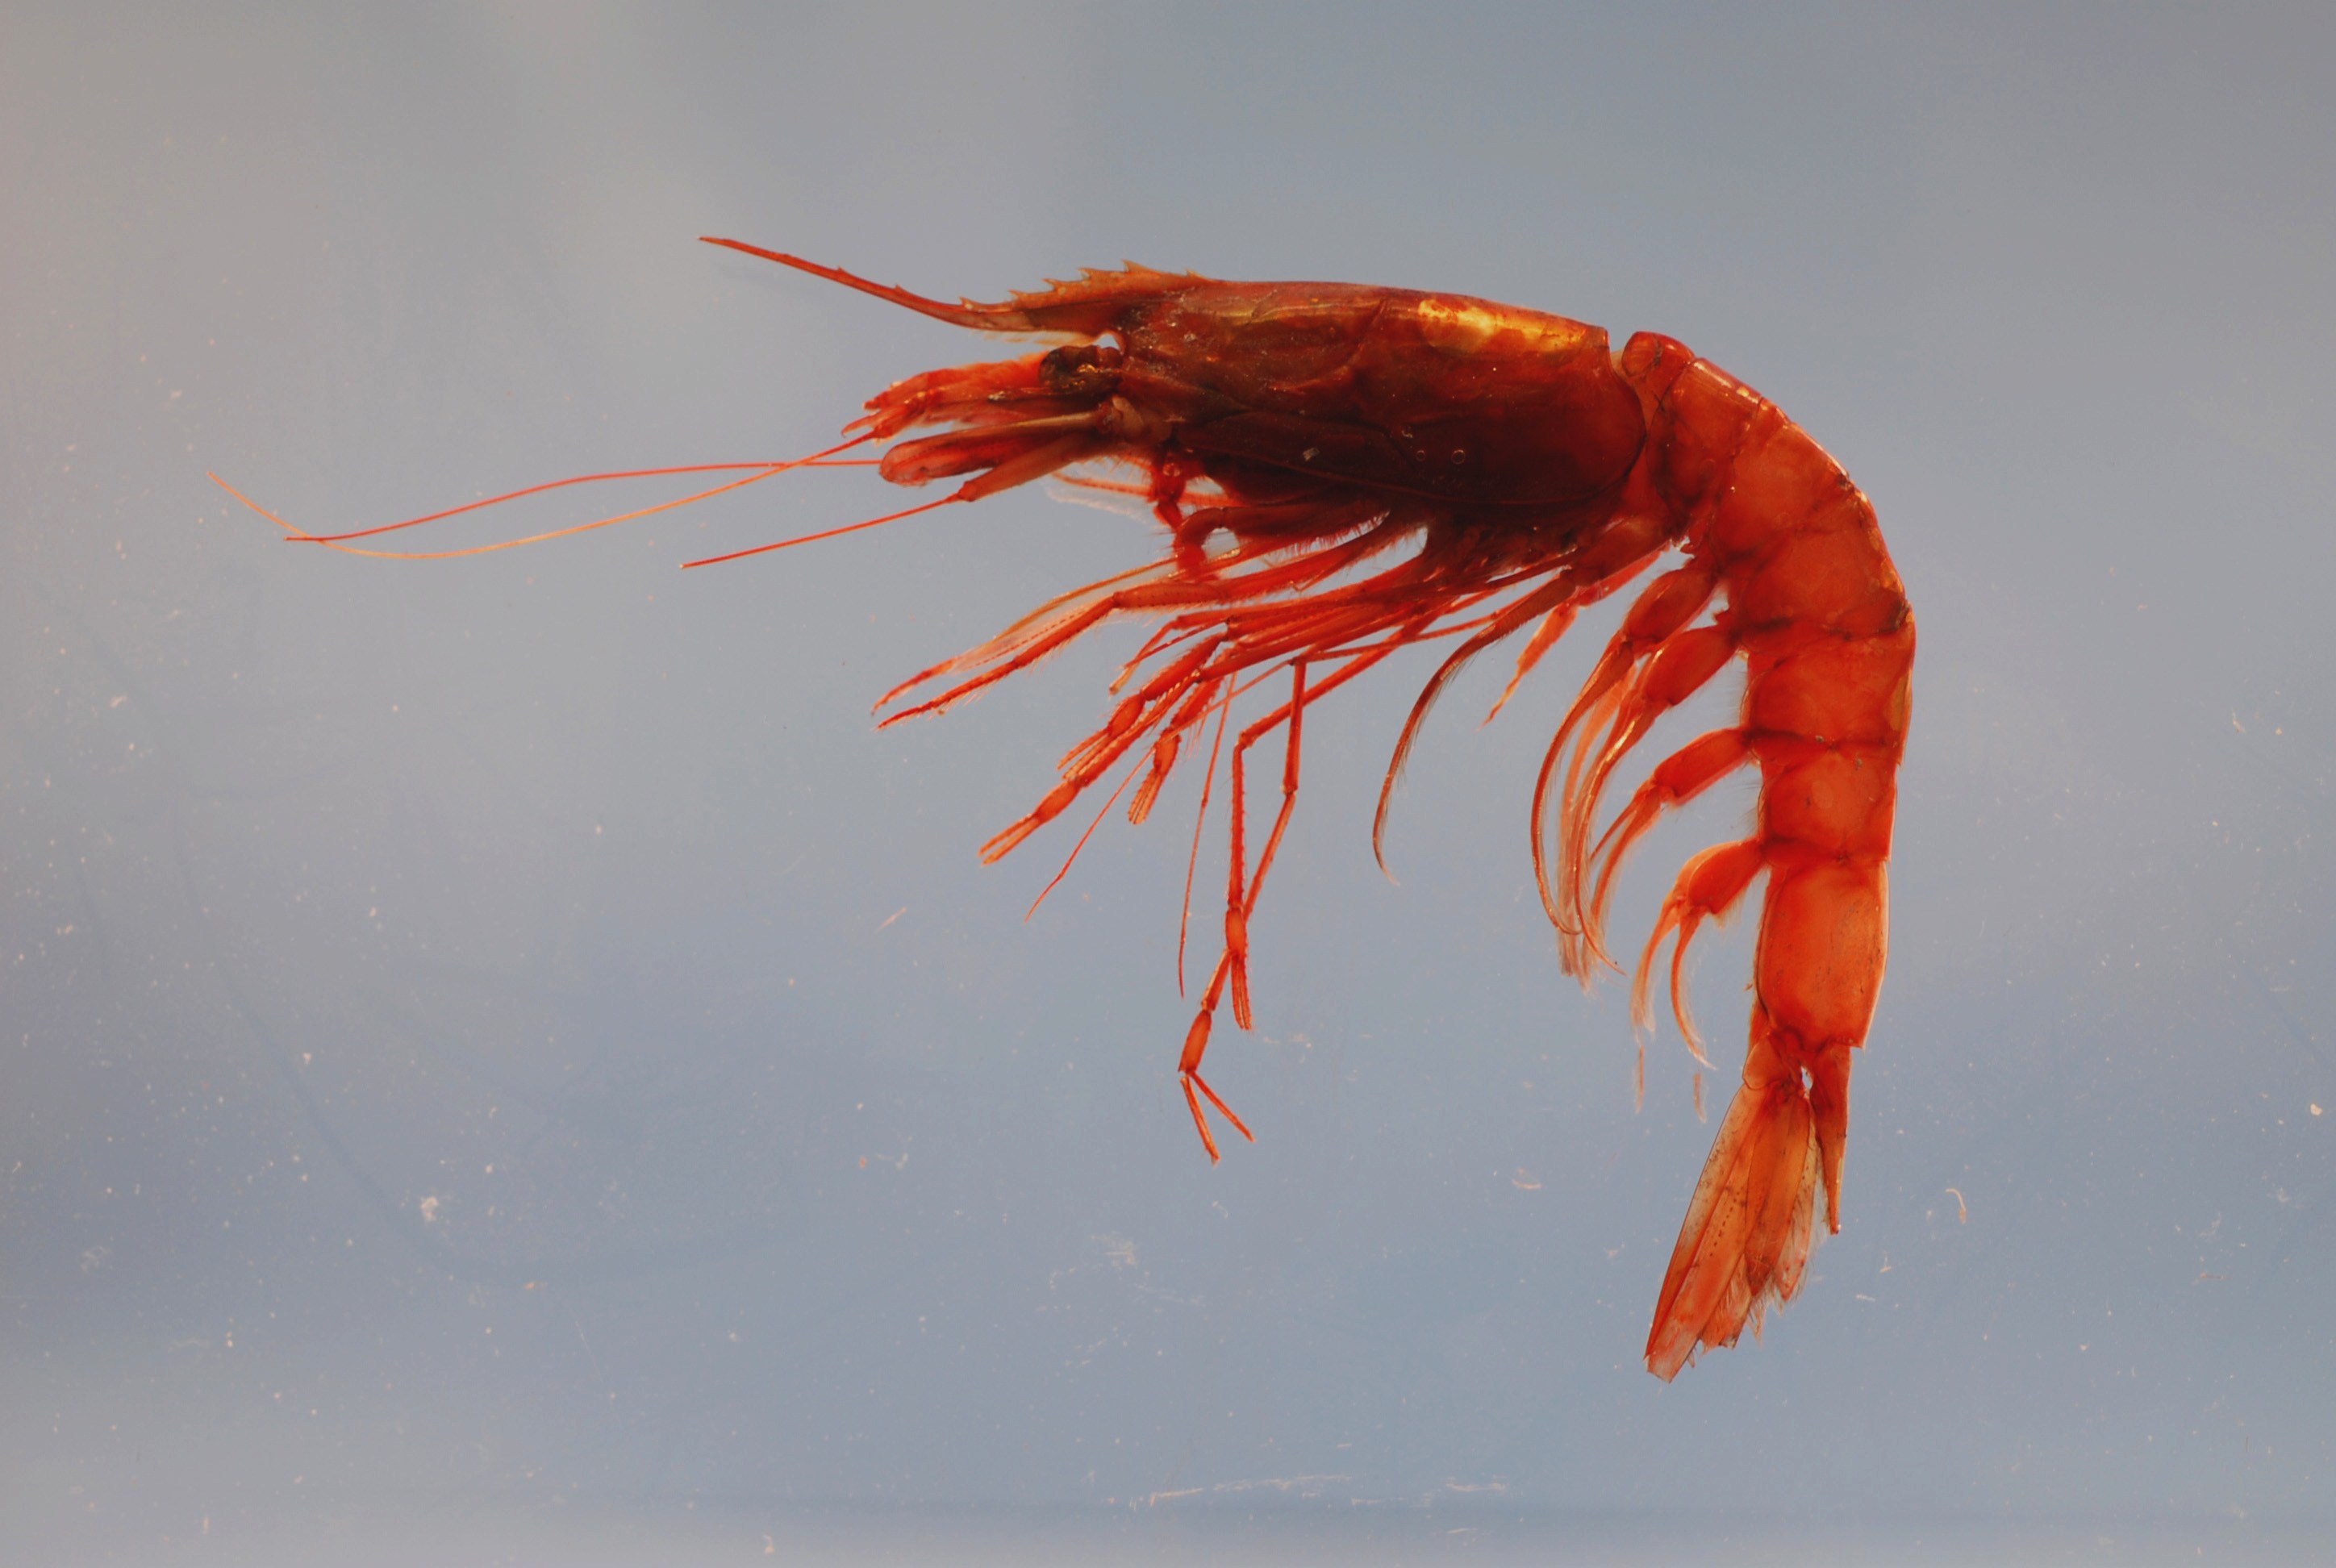 shrimps in water